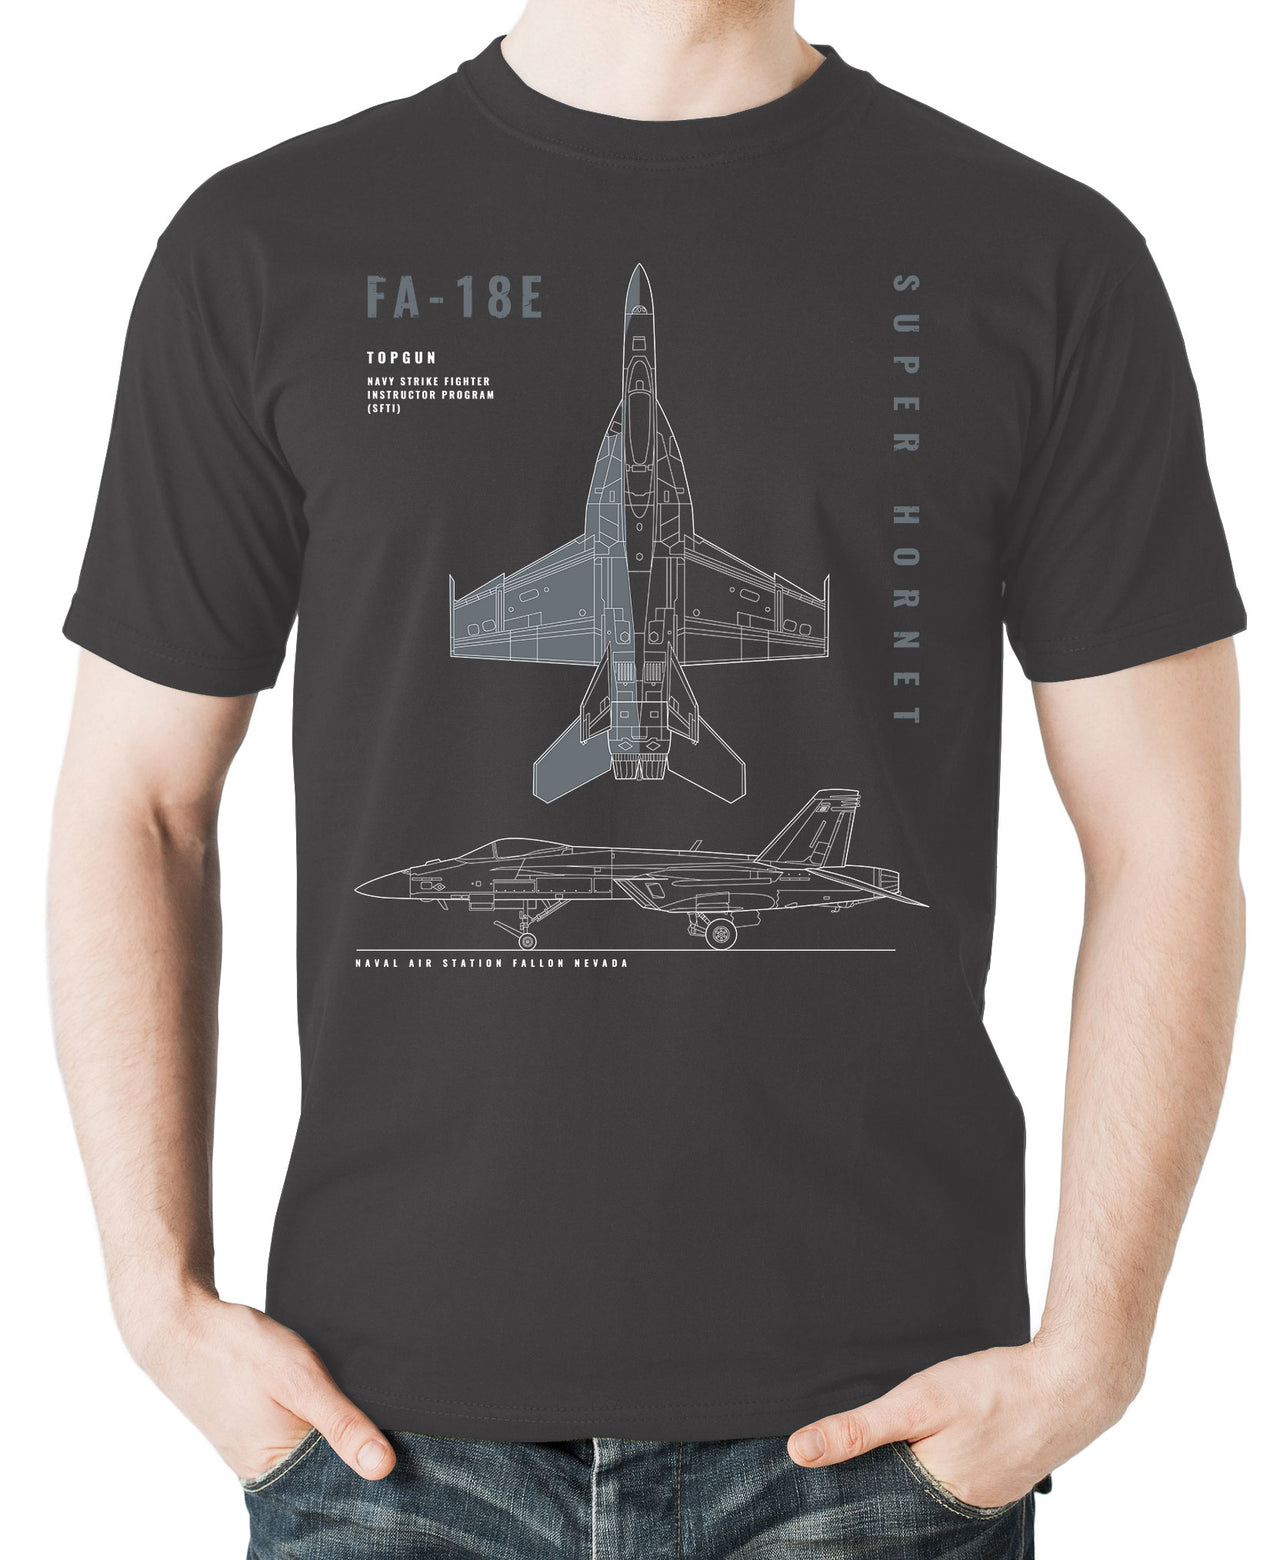 F/A-18E Super Hornet - T-shirt